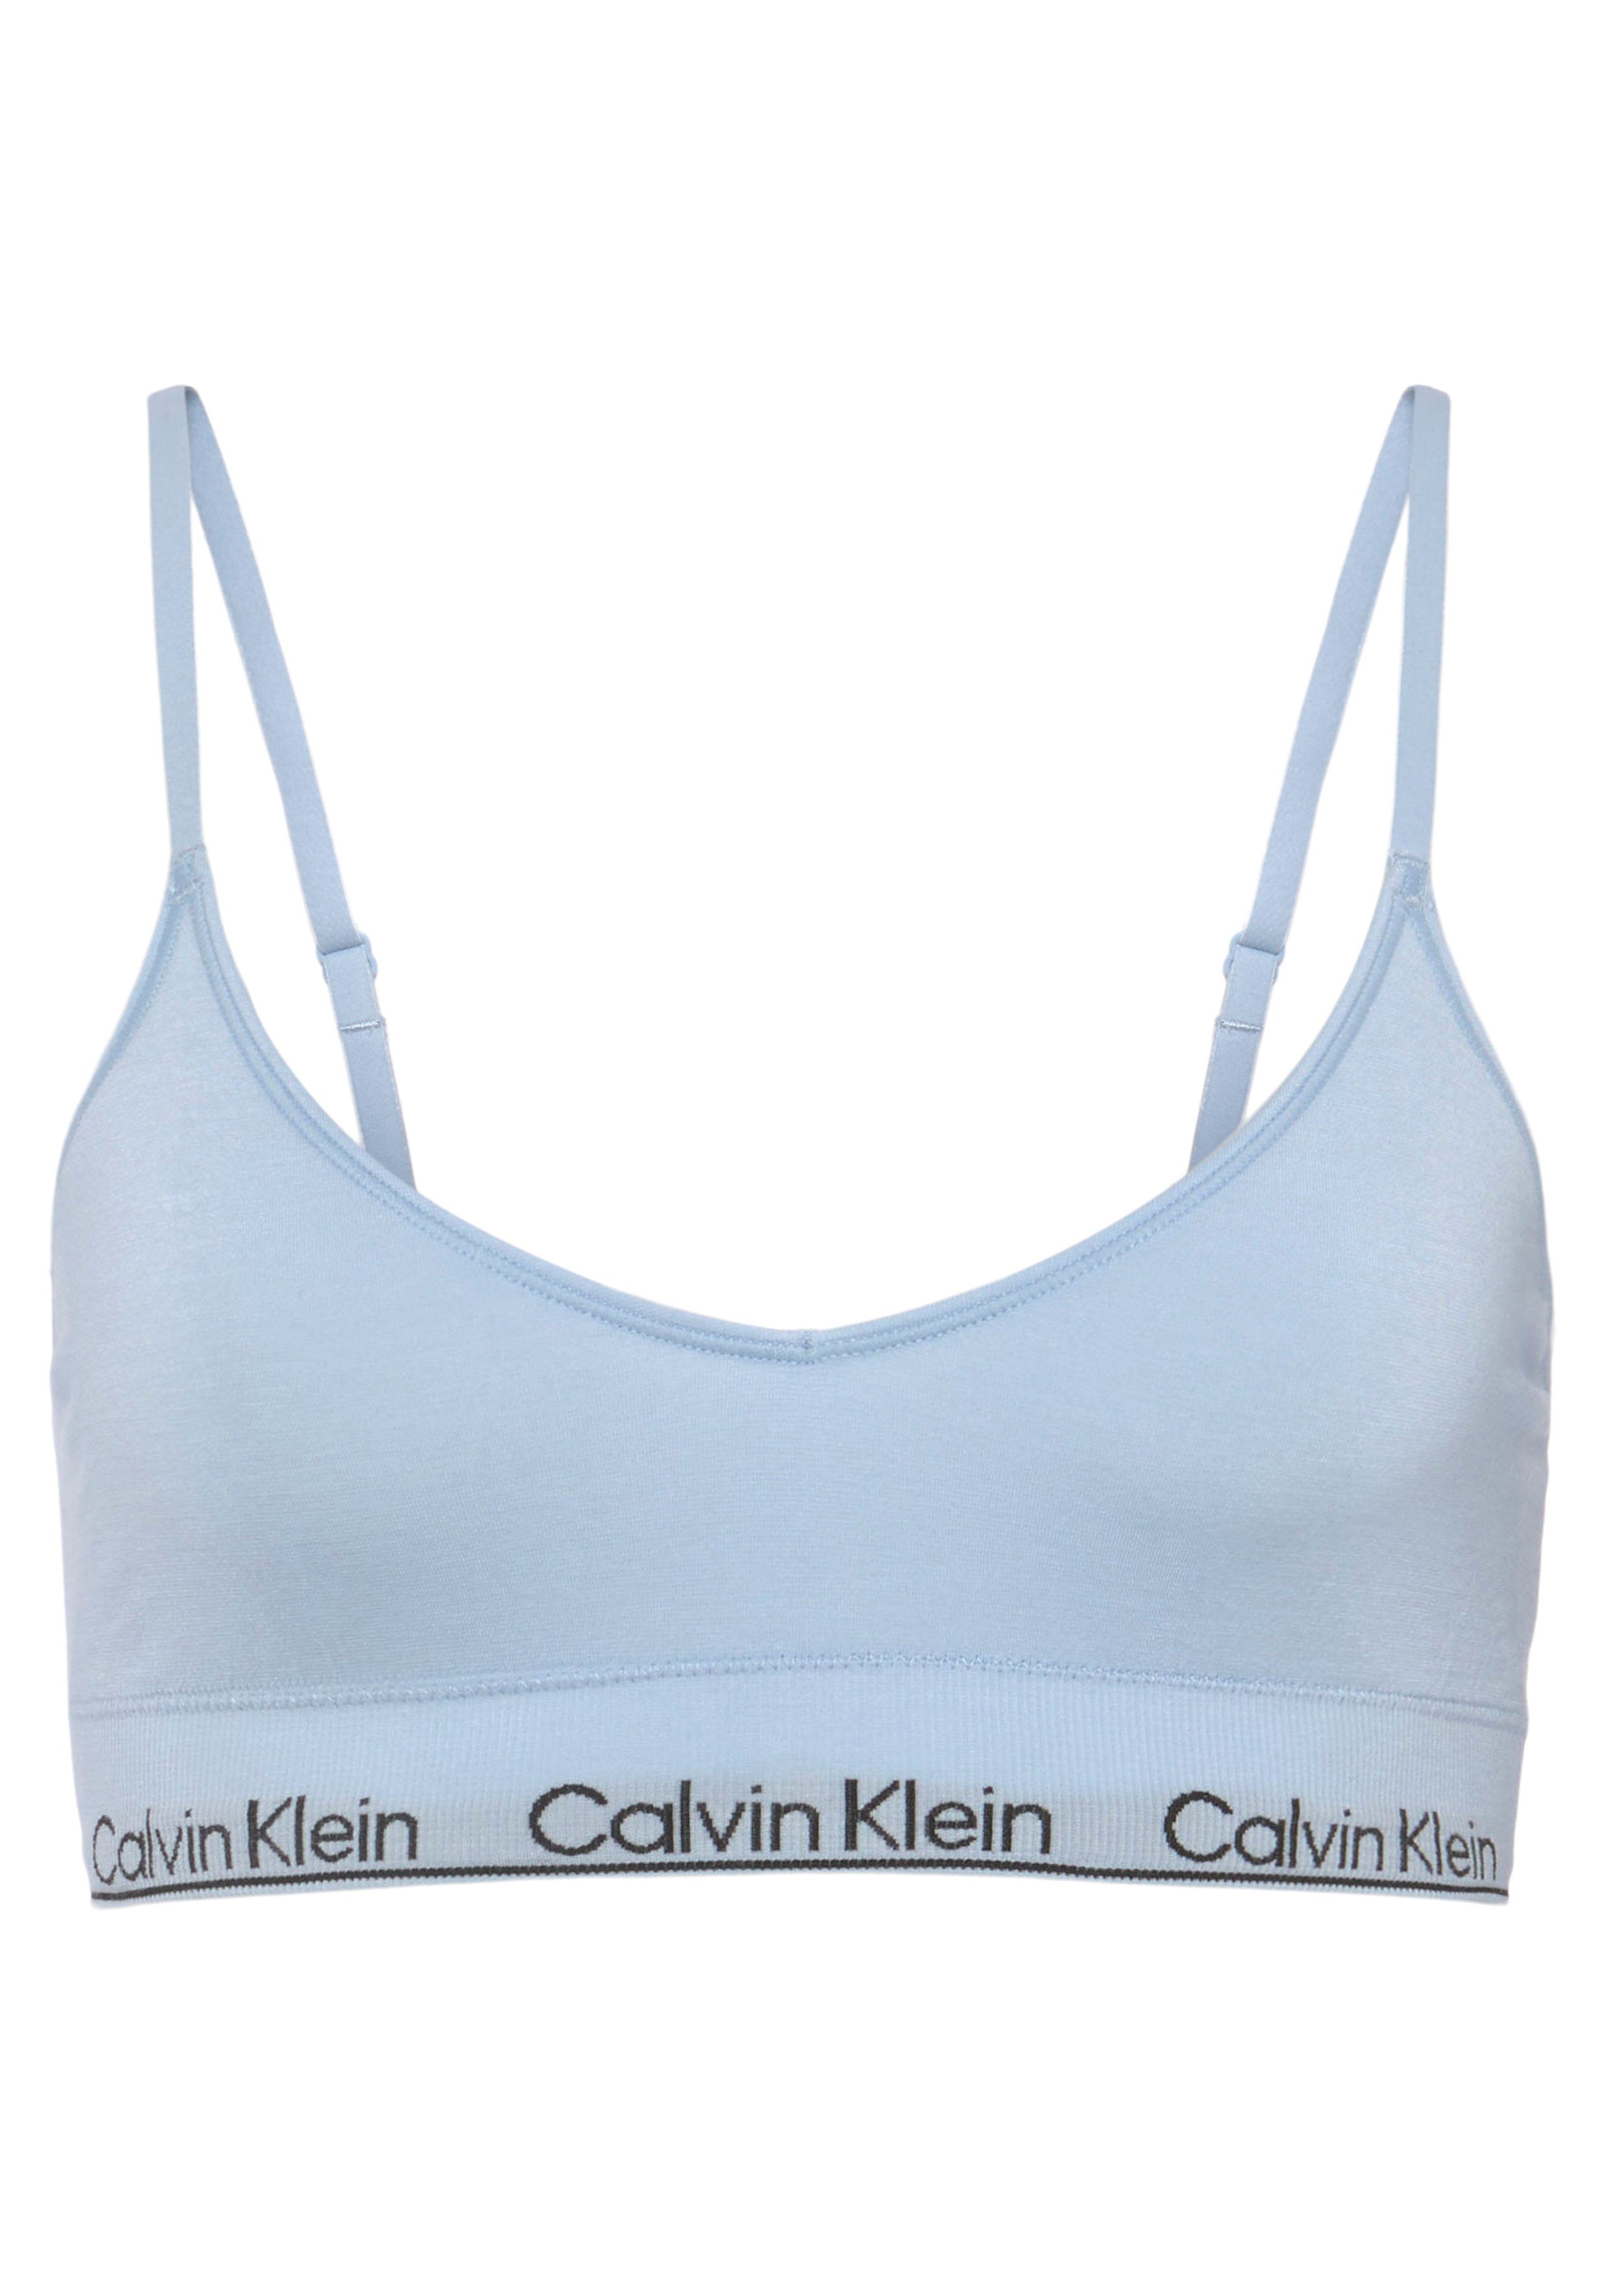 Calvin Klein Underwear mit hellblau LGHT Triangel-BH TRIANGLE LINED CK-Logoschriftzug